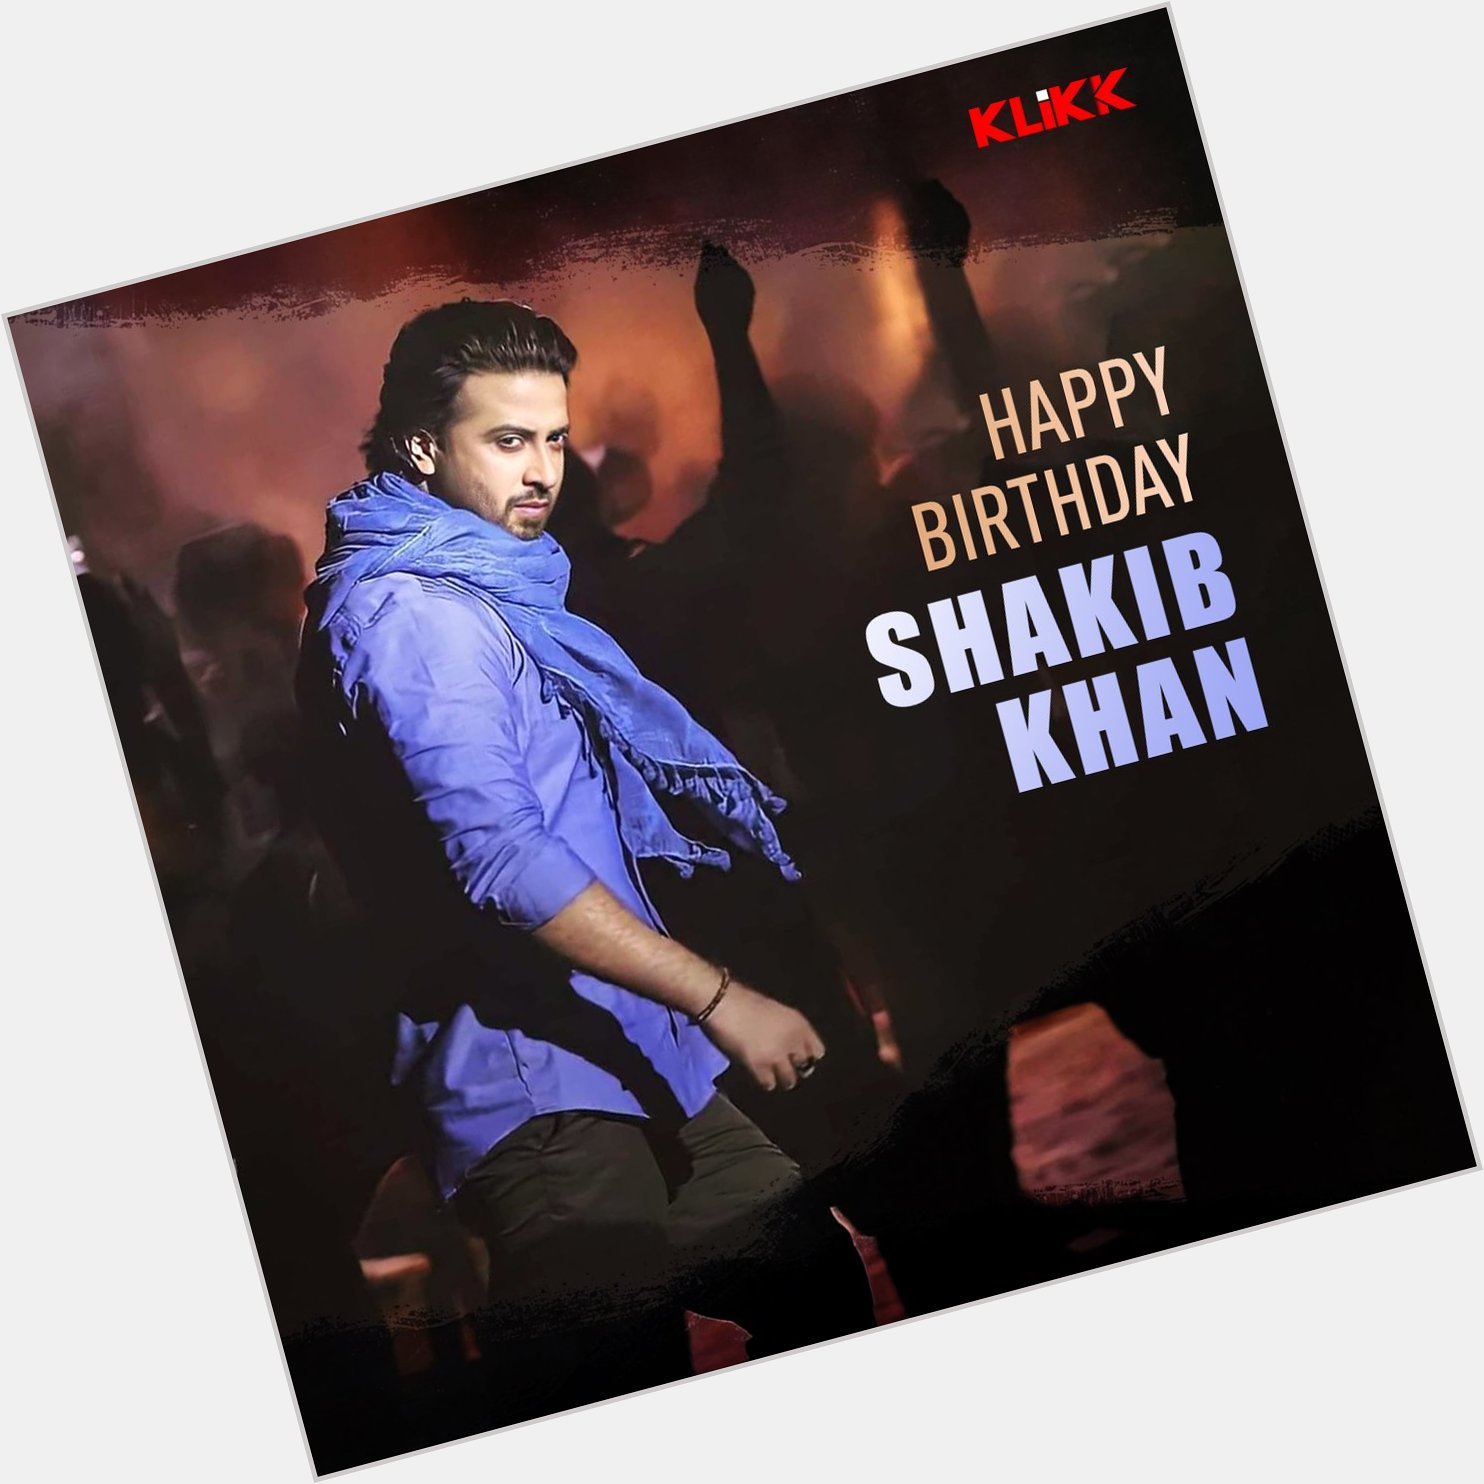 KLiKK wishes Shakib Khan a very Happy Birthday!  